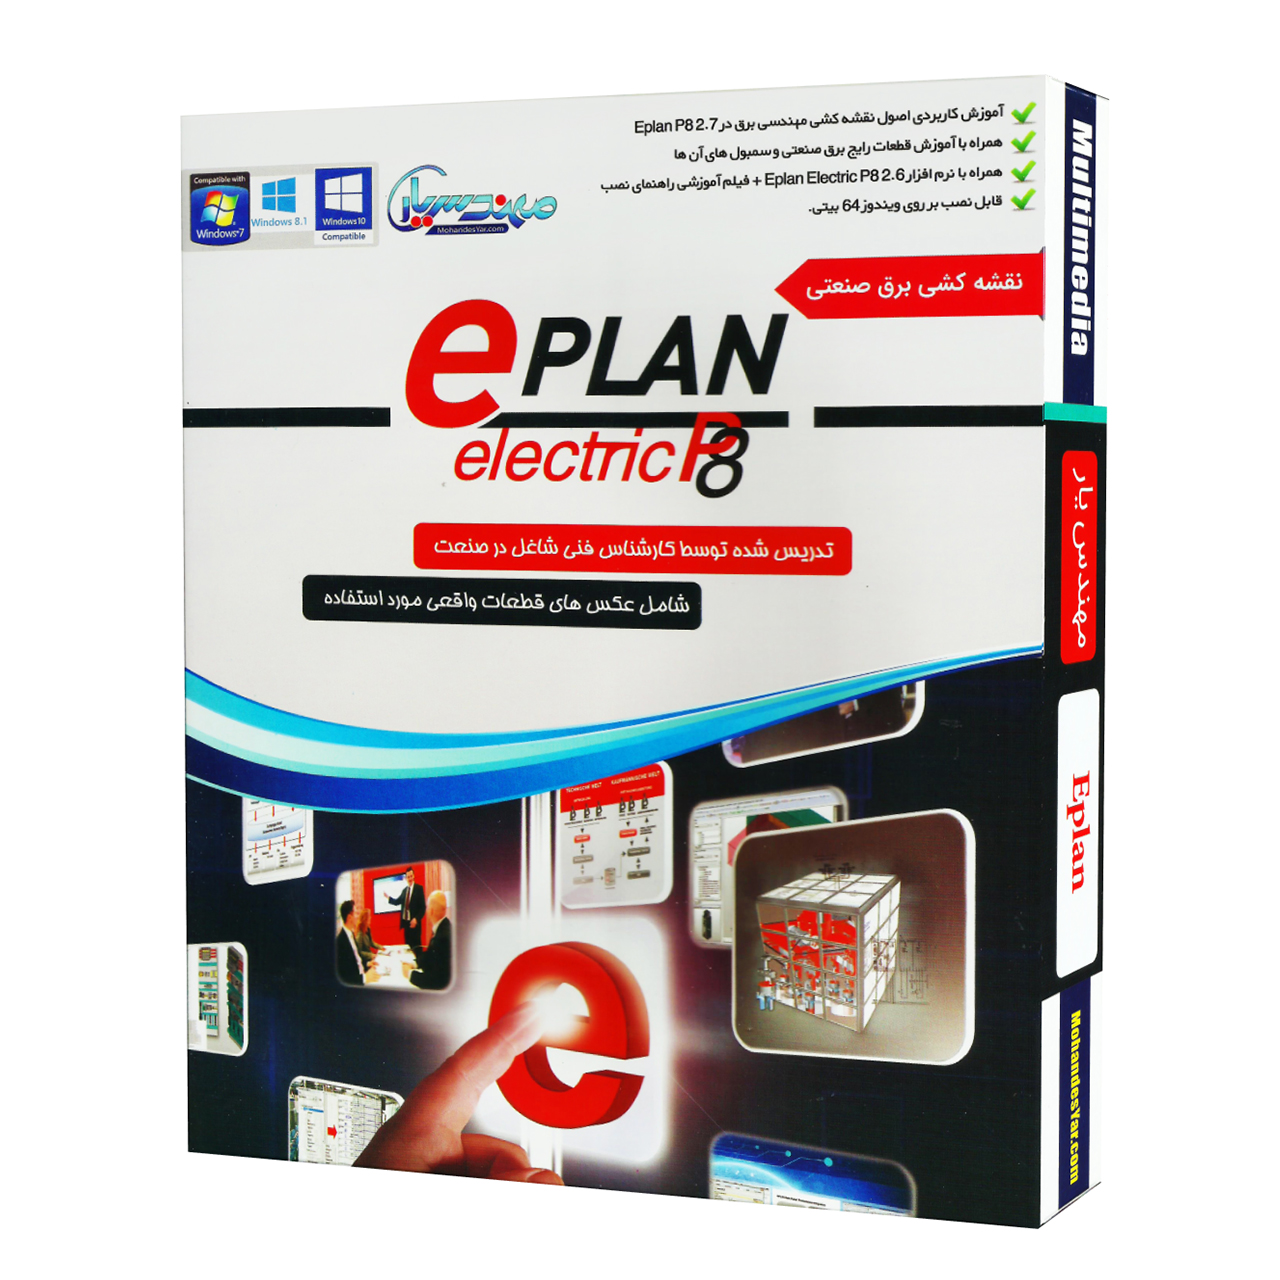 مجموعه آموزشی نرم افزار Eplan P8 نقشه کشی برق صنعتی نشر مهندس یار